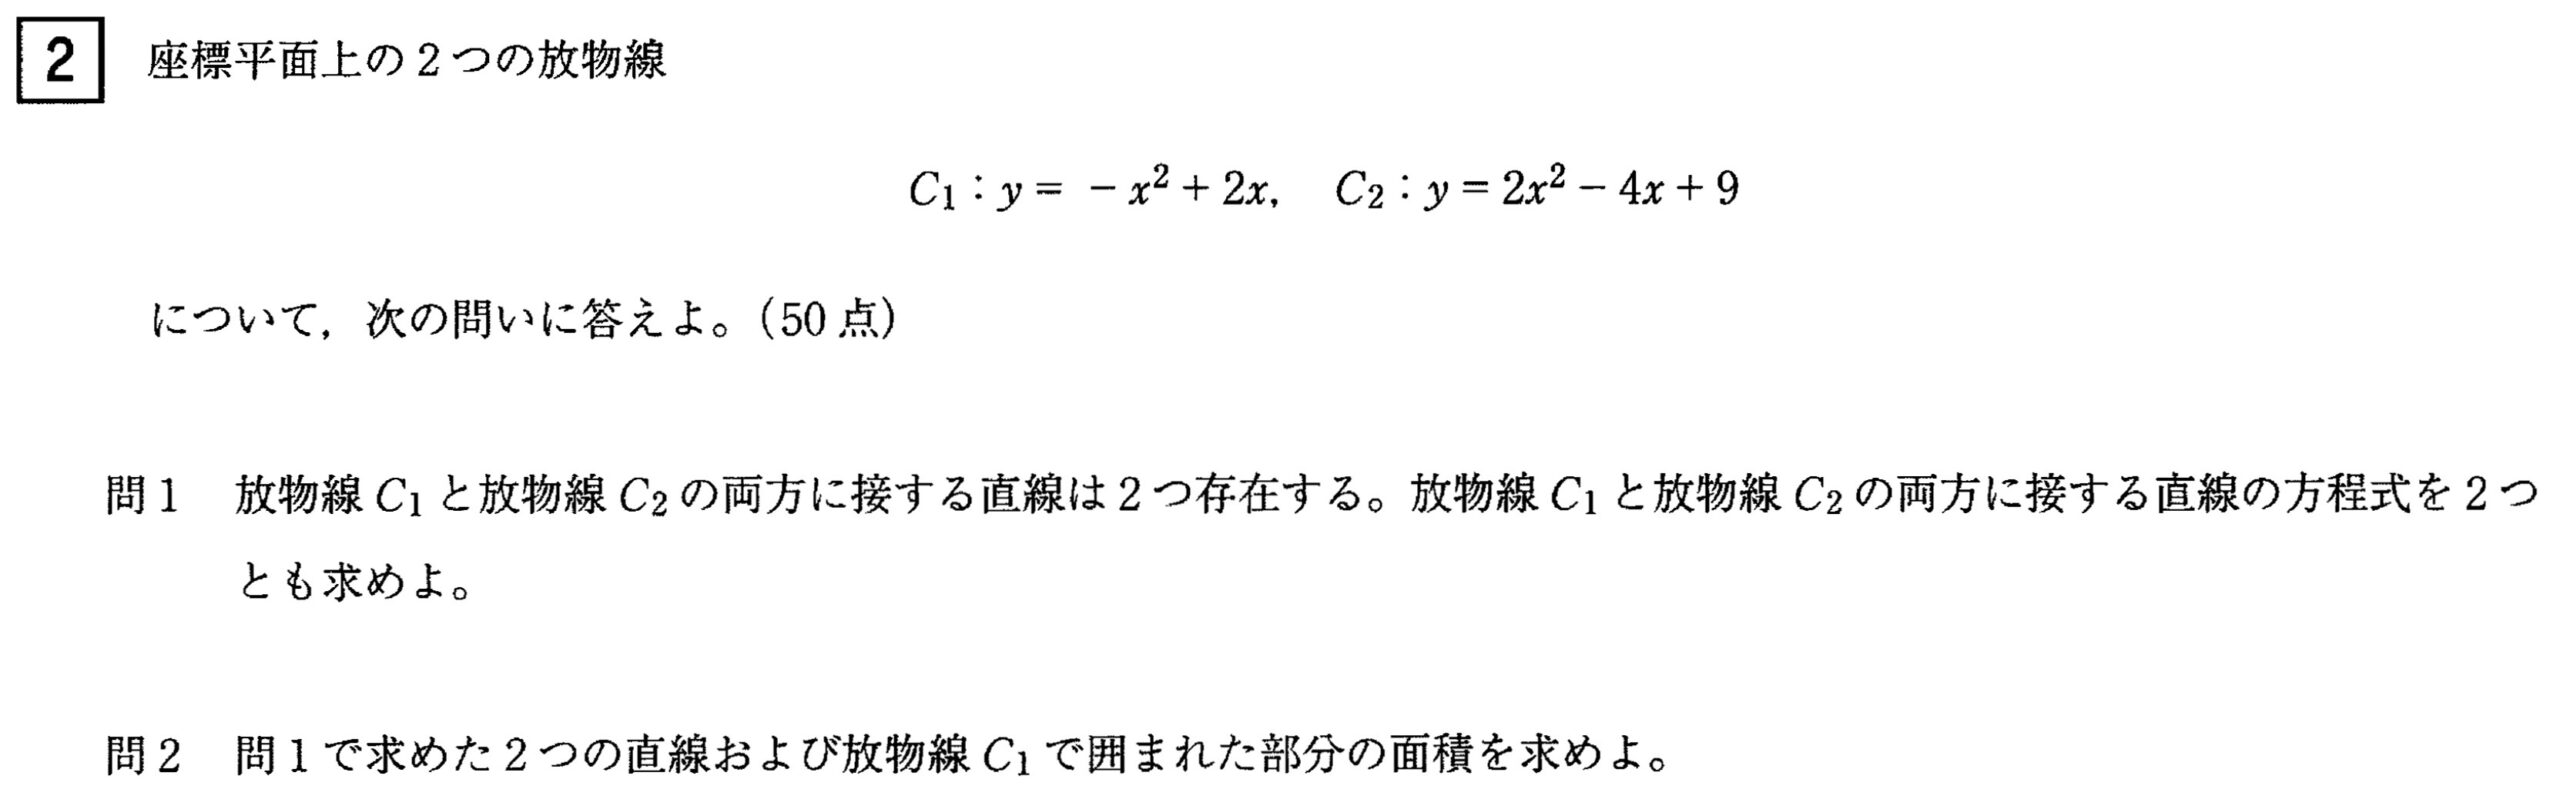 琉球大学入試文系数学2022年(令和4年)過去問題